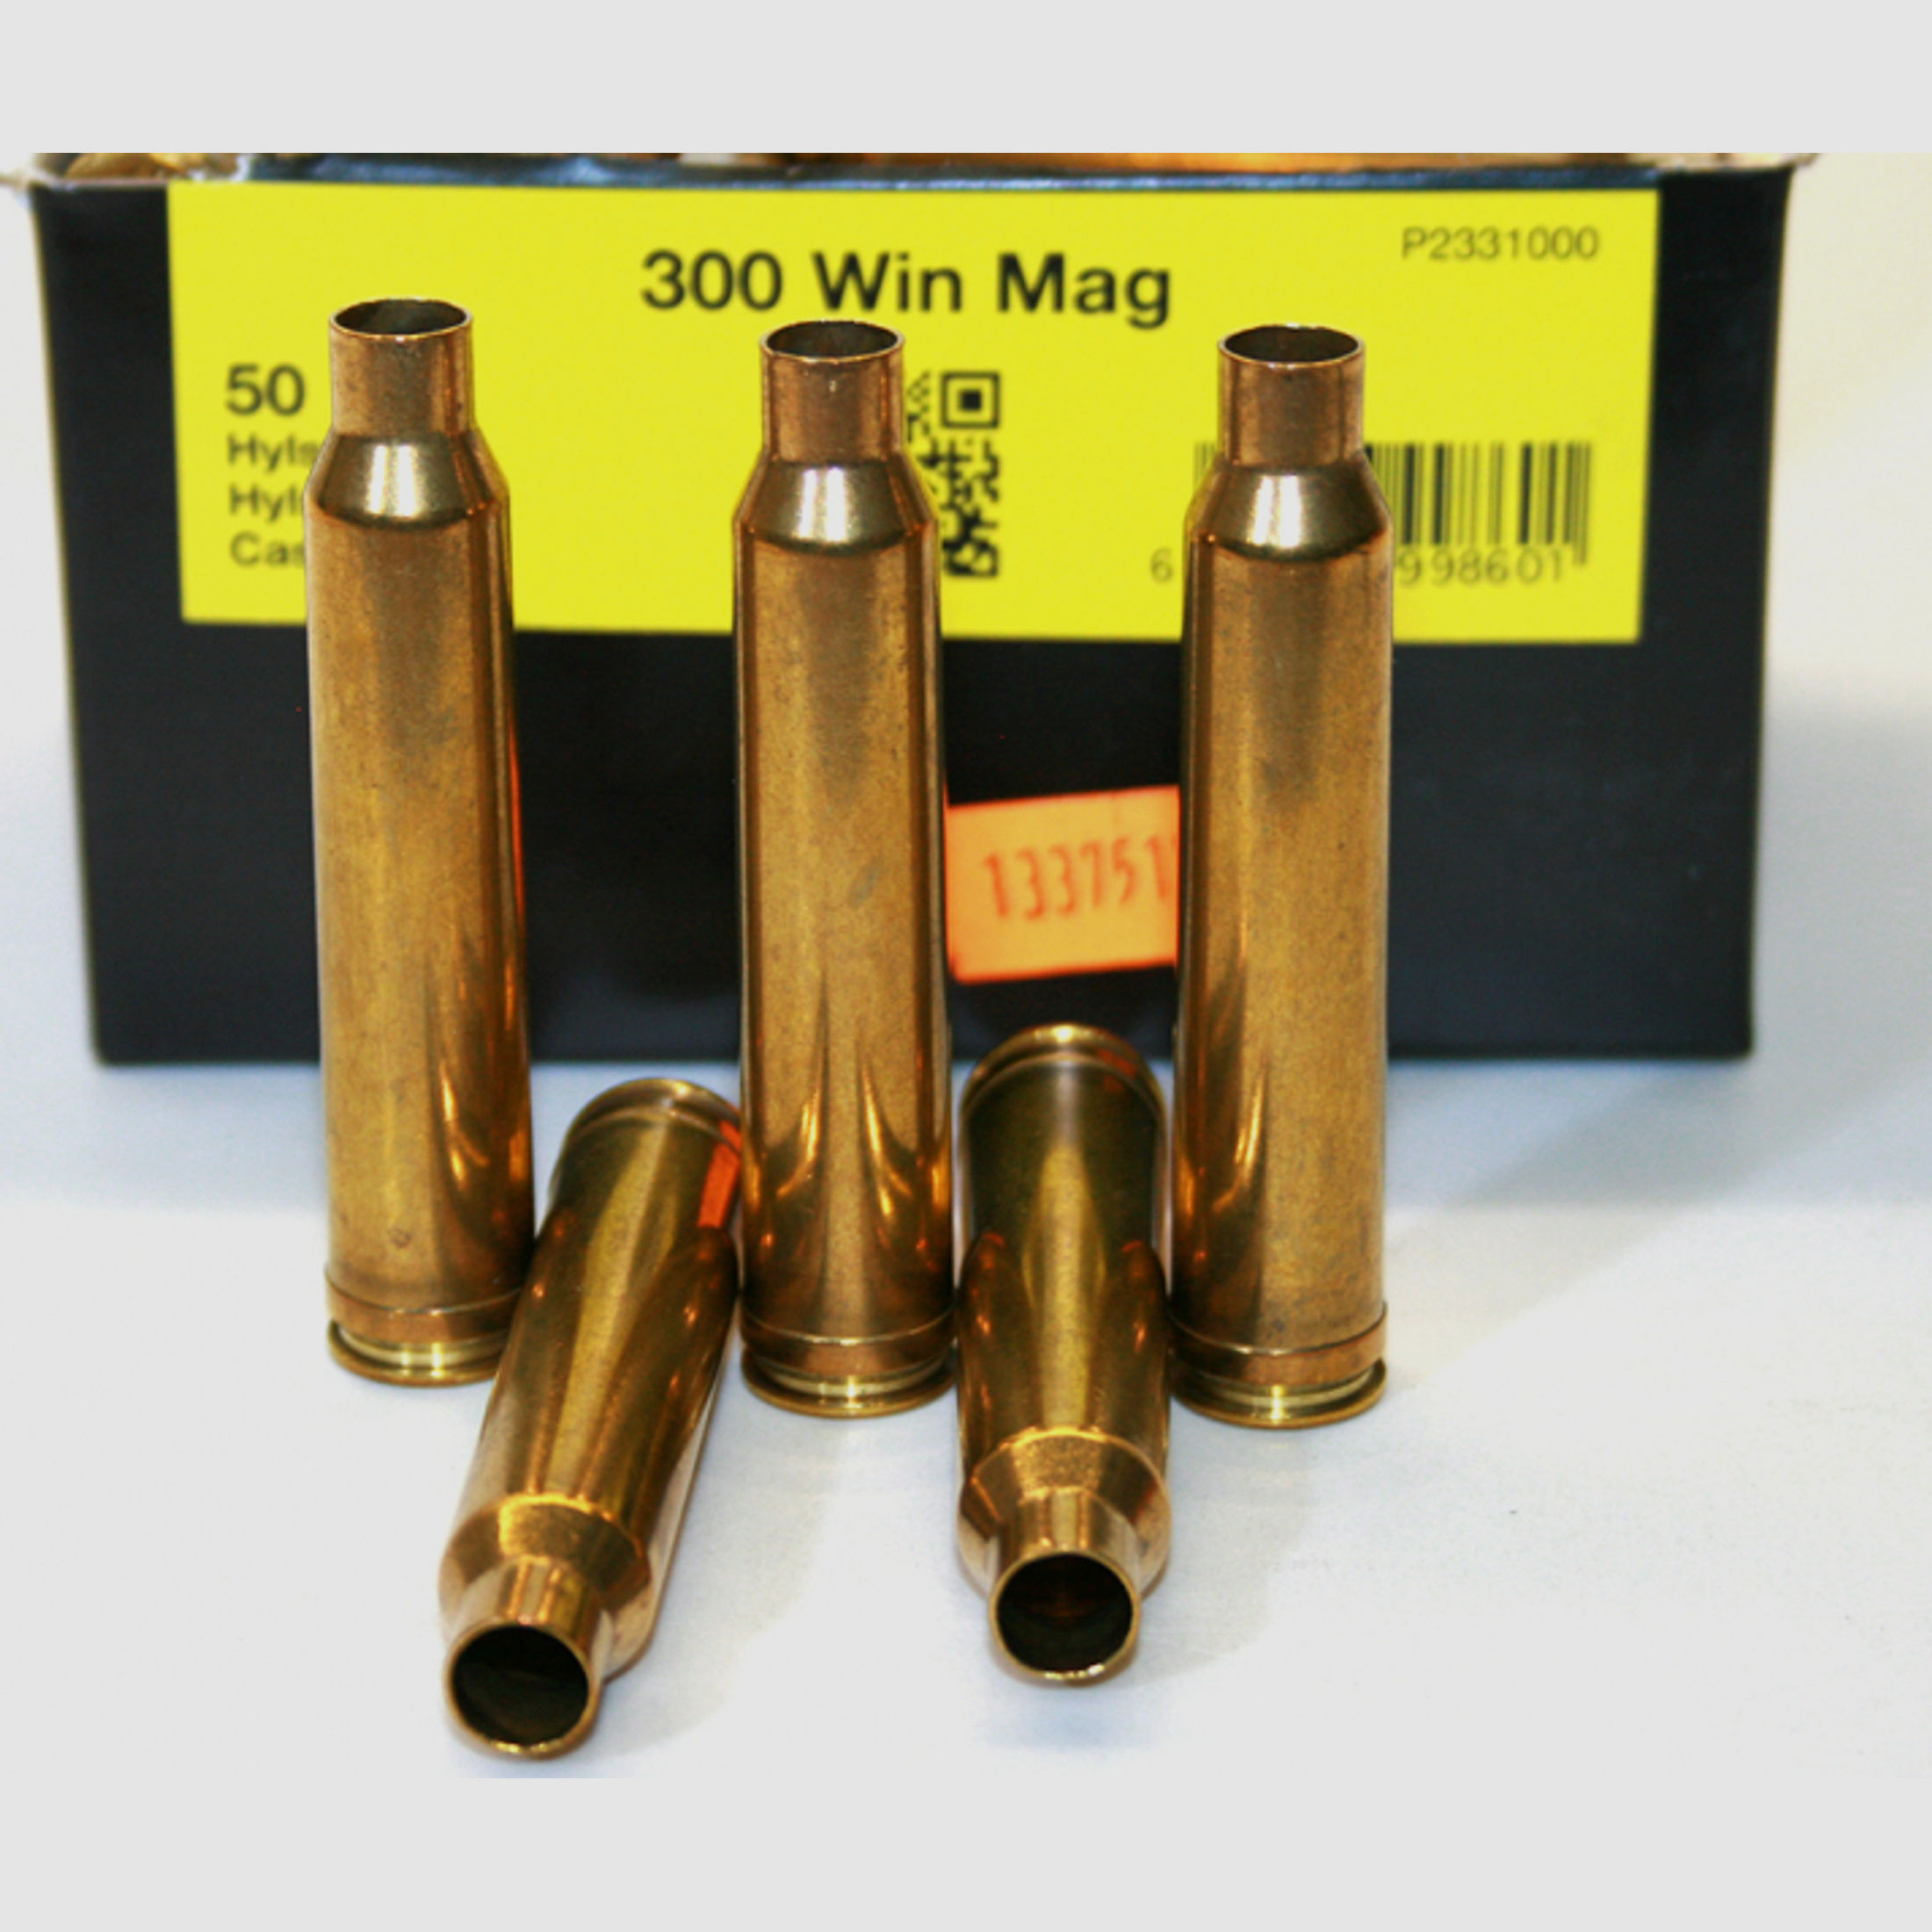 50 Stück NEUE SAKO Hülsen .300 WIN MAG Winchester M. Boxerzündung NEU & Originalverpackt #133751700